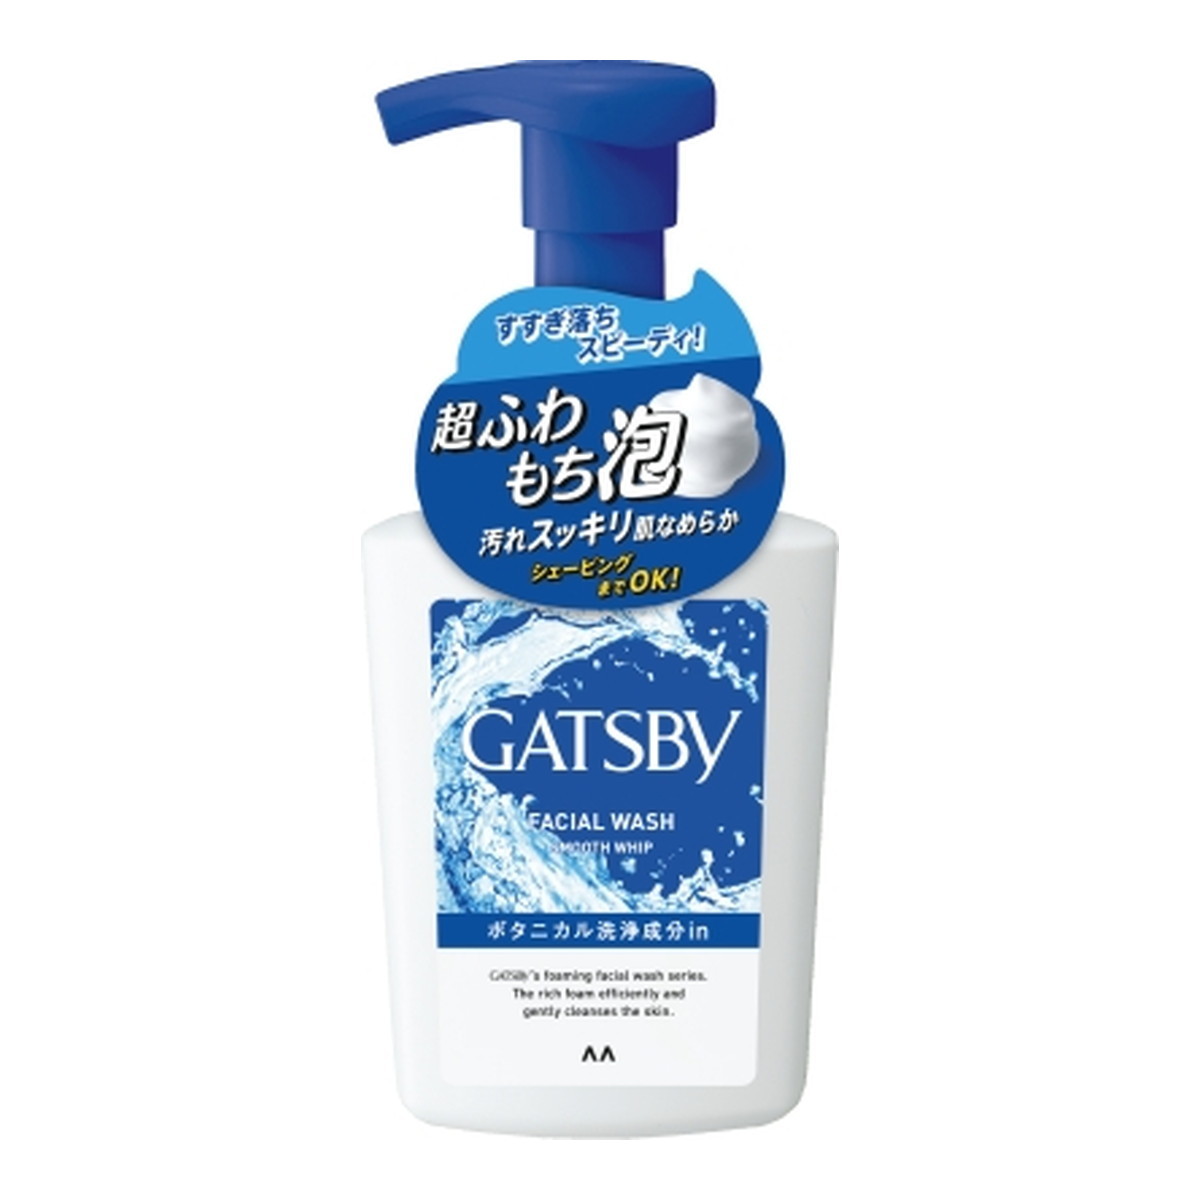 GATSBY ギャツビー フェイシャルウォッシュ スムースホイップ 150ml×1 男性用洗顔料の商品画像